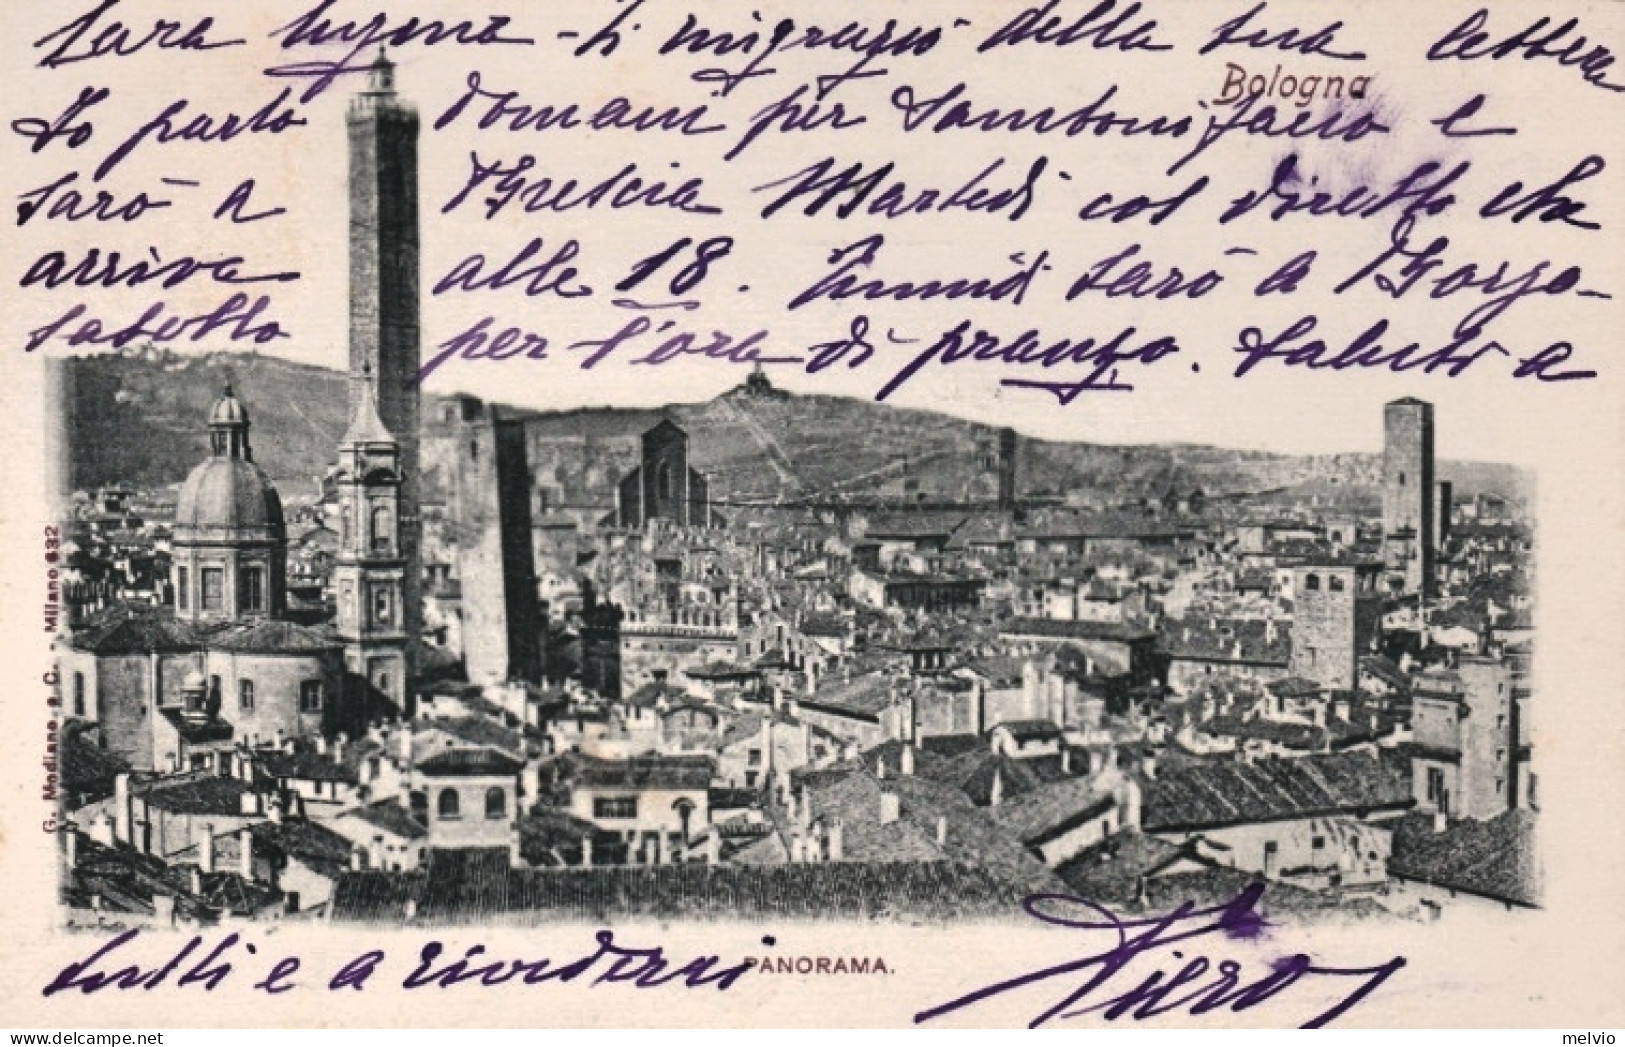 1898-Bologna Panorama, Cartolina Viaggiata - Bologna